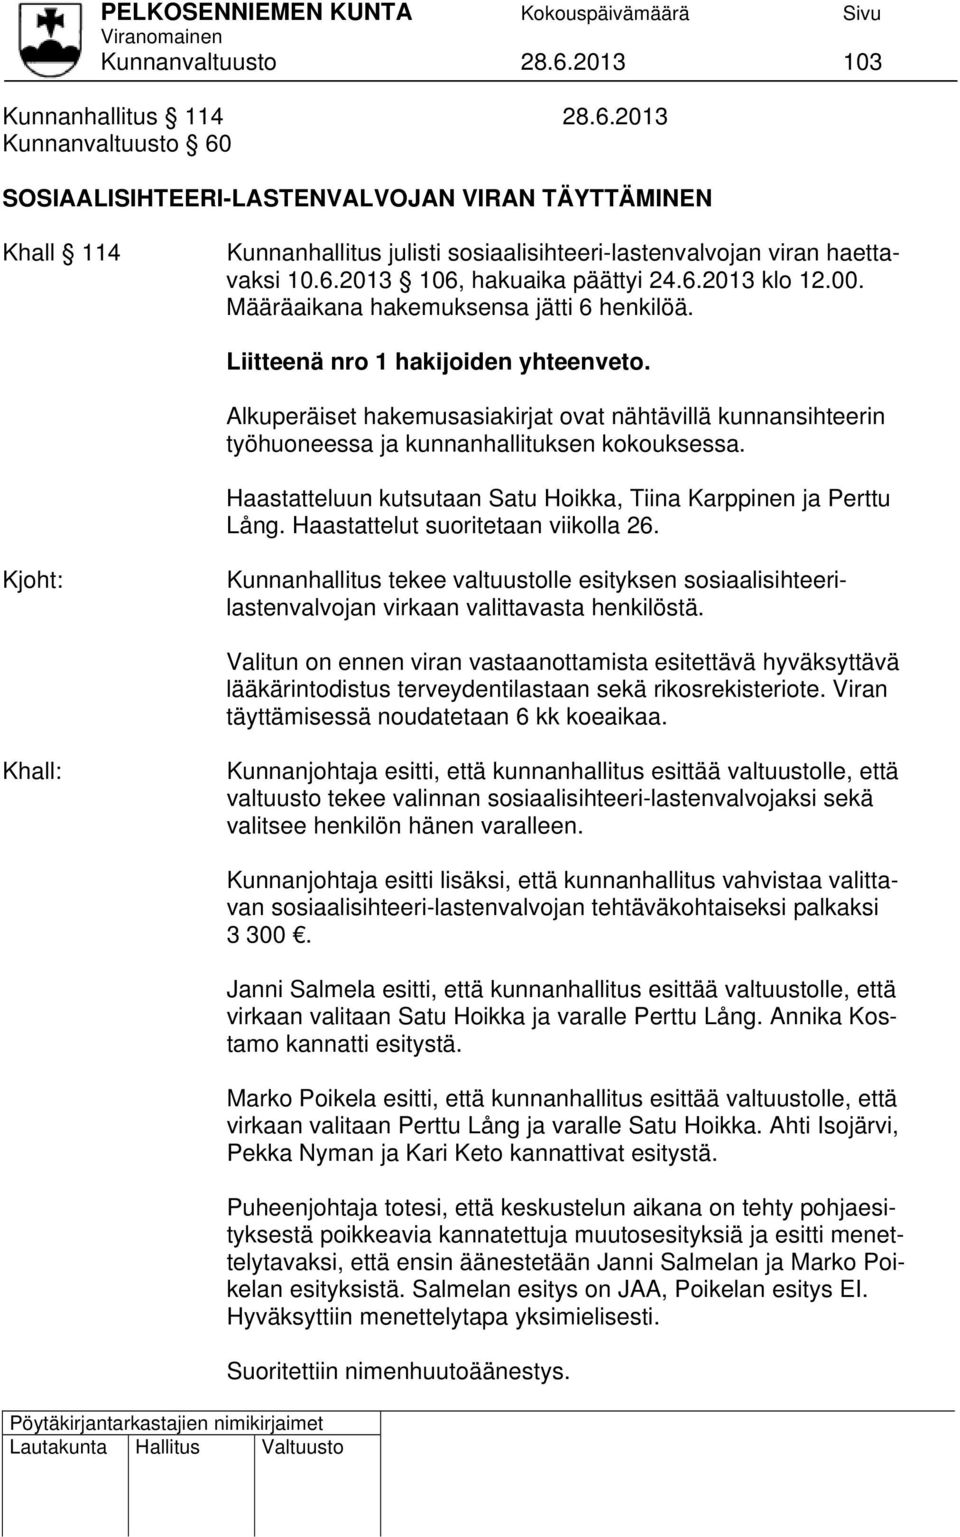 Alkuperäiset hakemusasiakirjat ovat nähtävillä kunnansihteerin työhuoneessa ja kunnanhallituksen kokouksessa. Haastatteluun kutsutaan Satu Hoikka, Tiina Karppinen ja Perttu Lång.